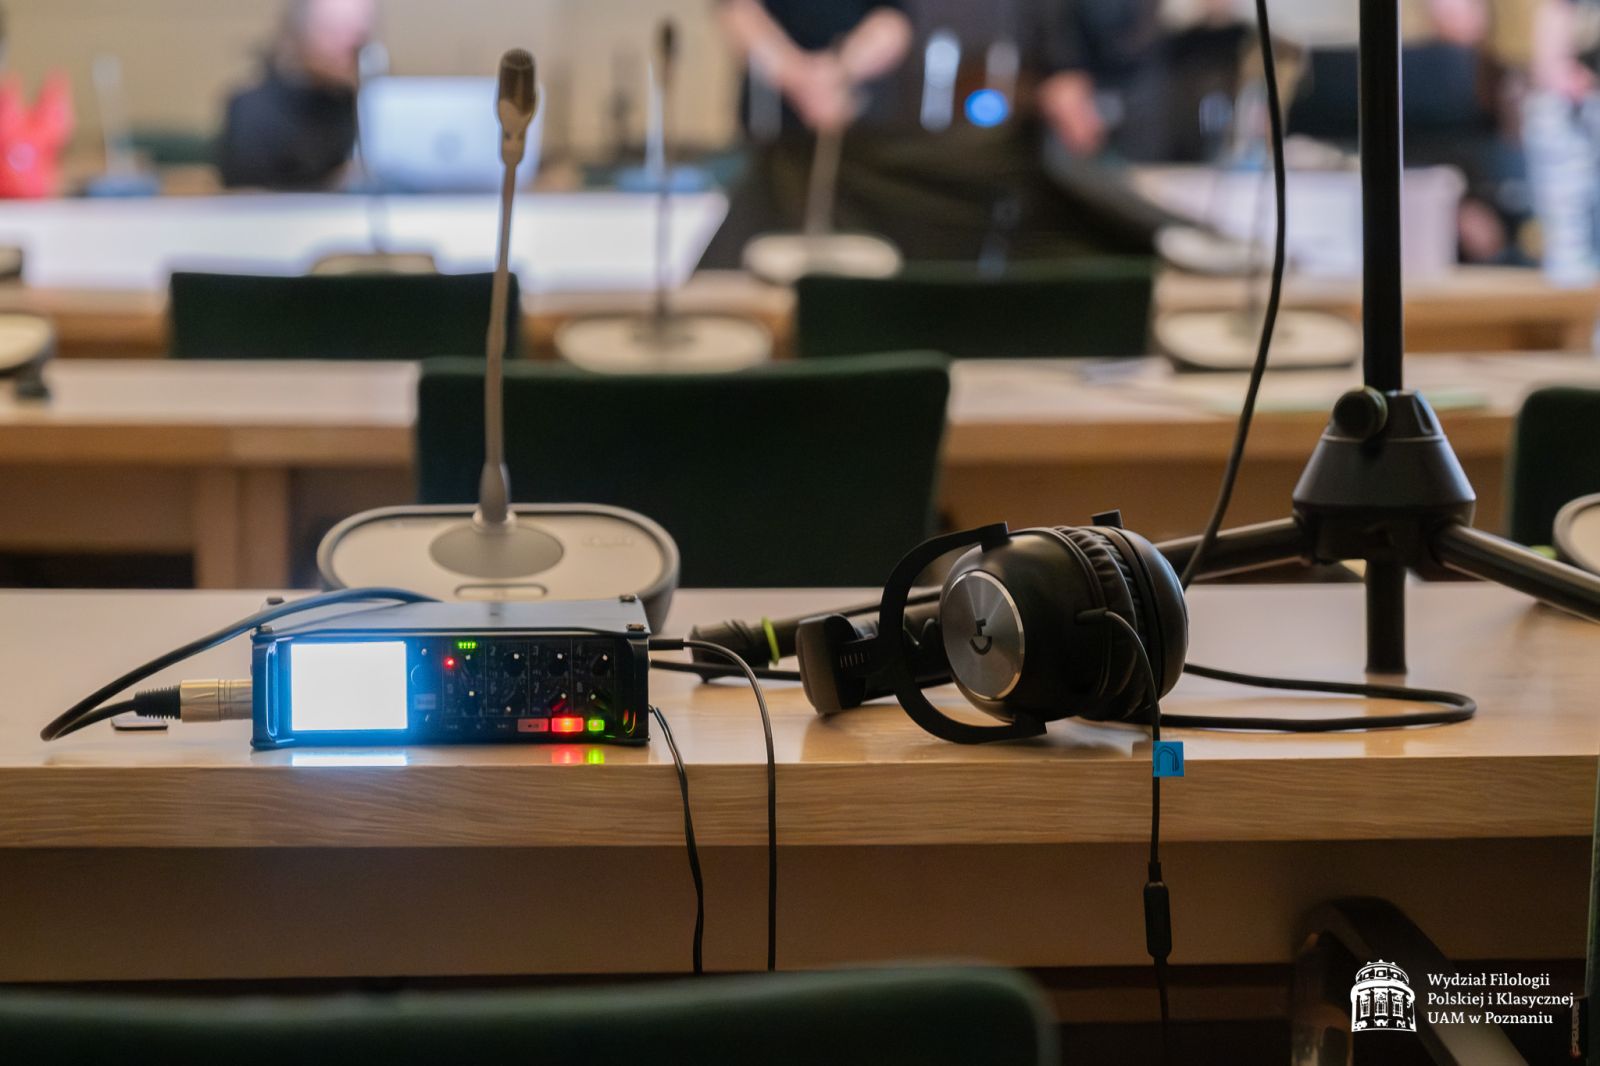 Na stole leży sprzęt do nagrywania audio i wideo, między innymi słuchawki i mikrofon